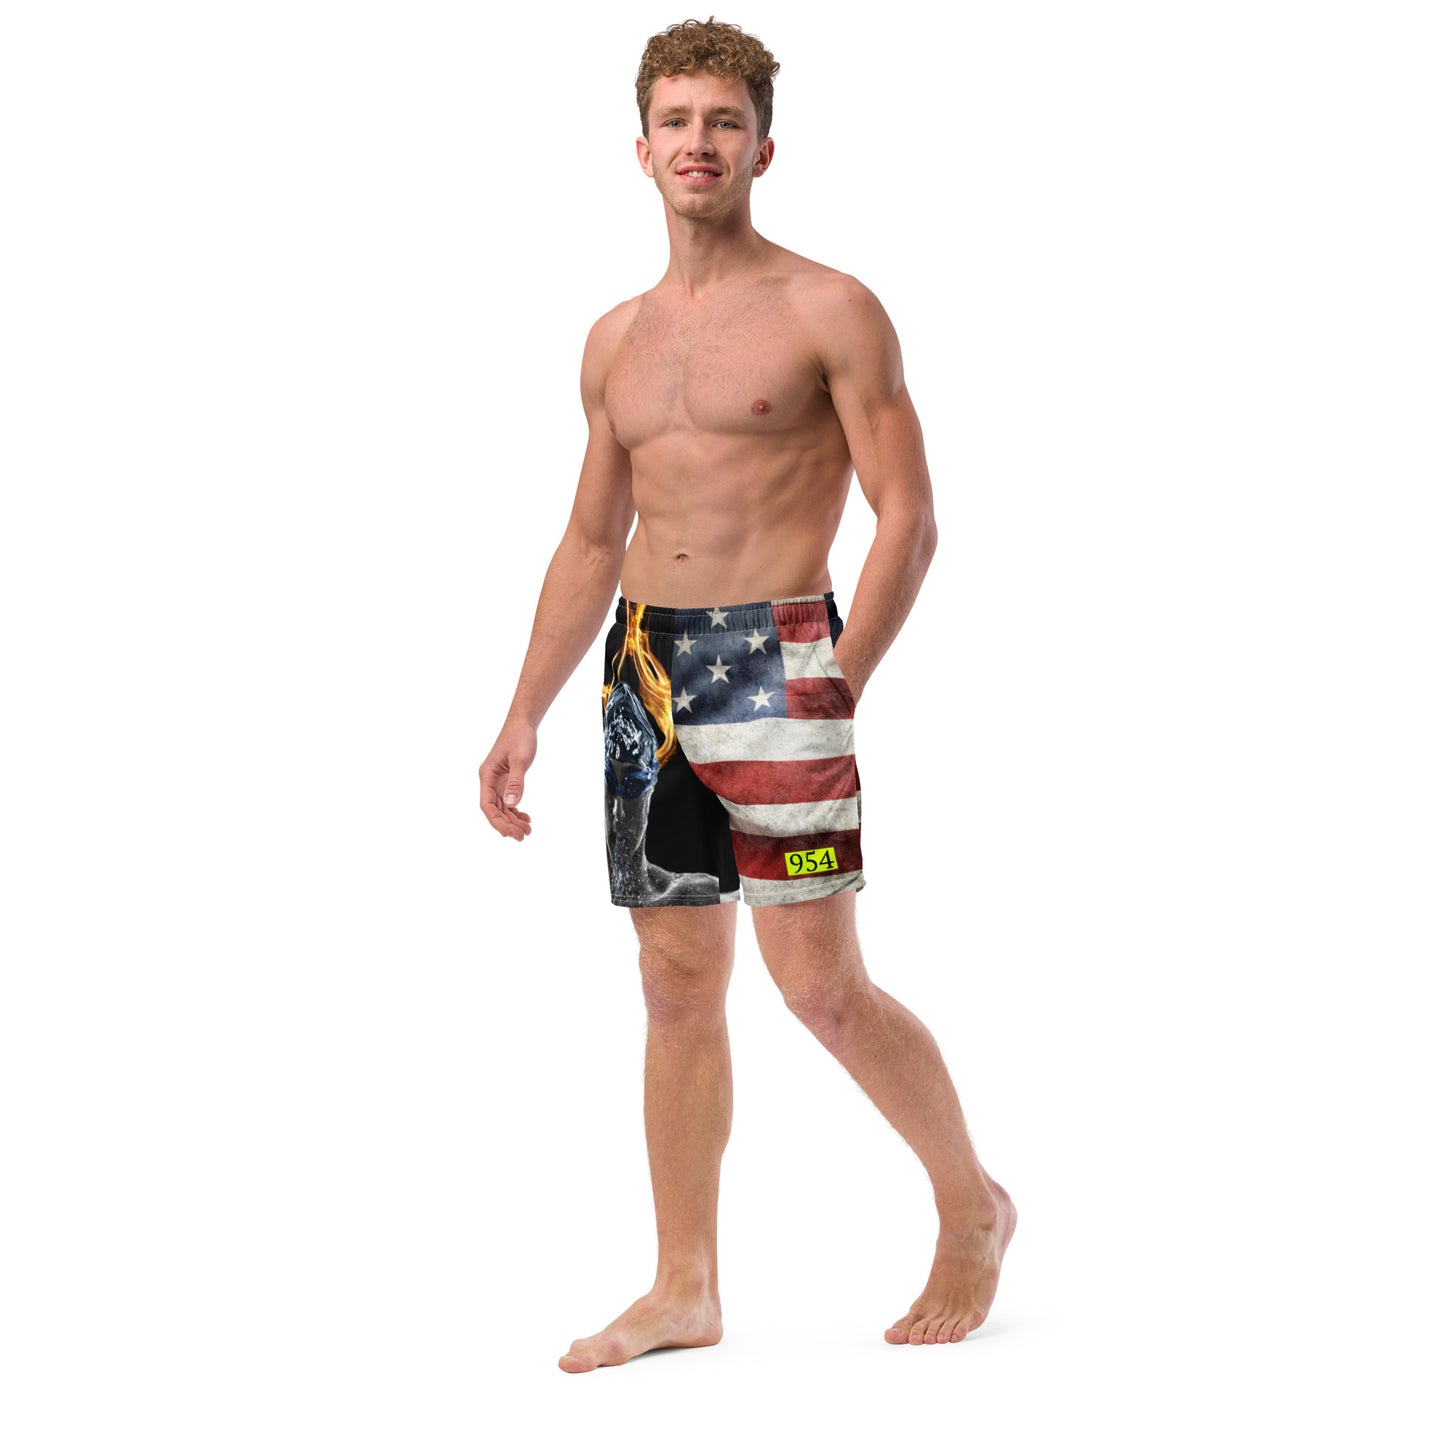 Swimmer FS 954 Men's swim trunks